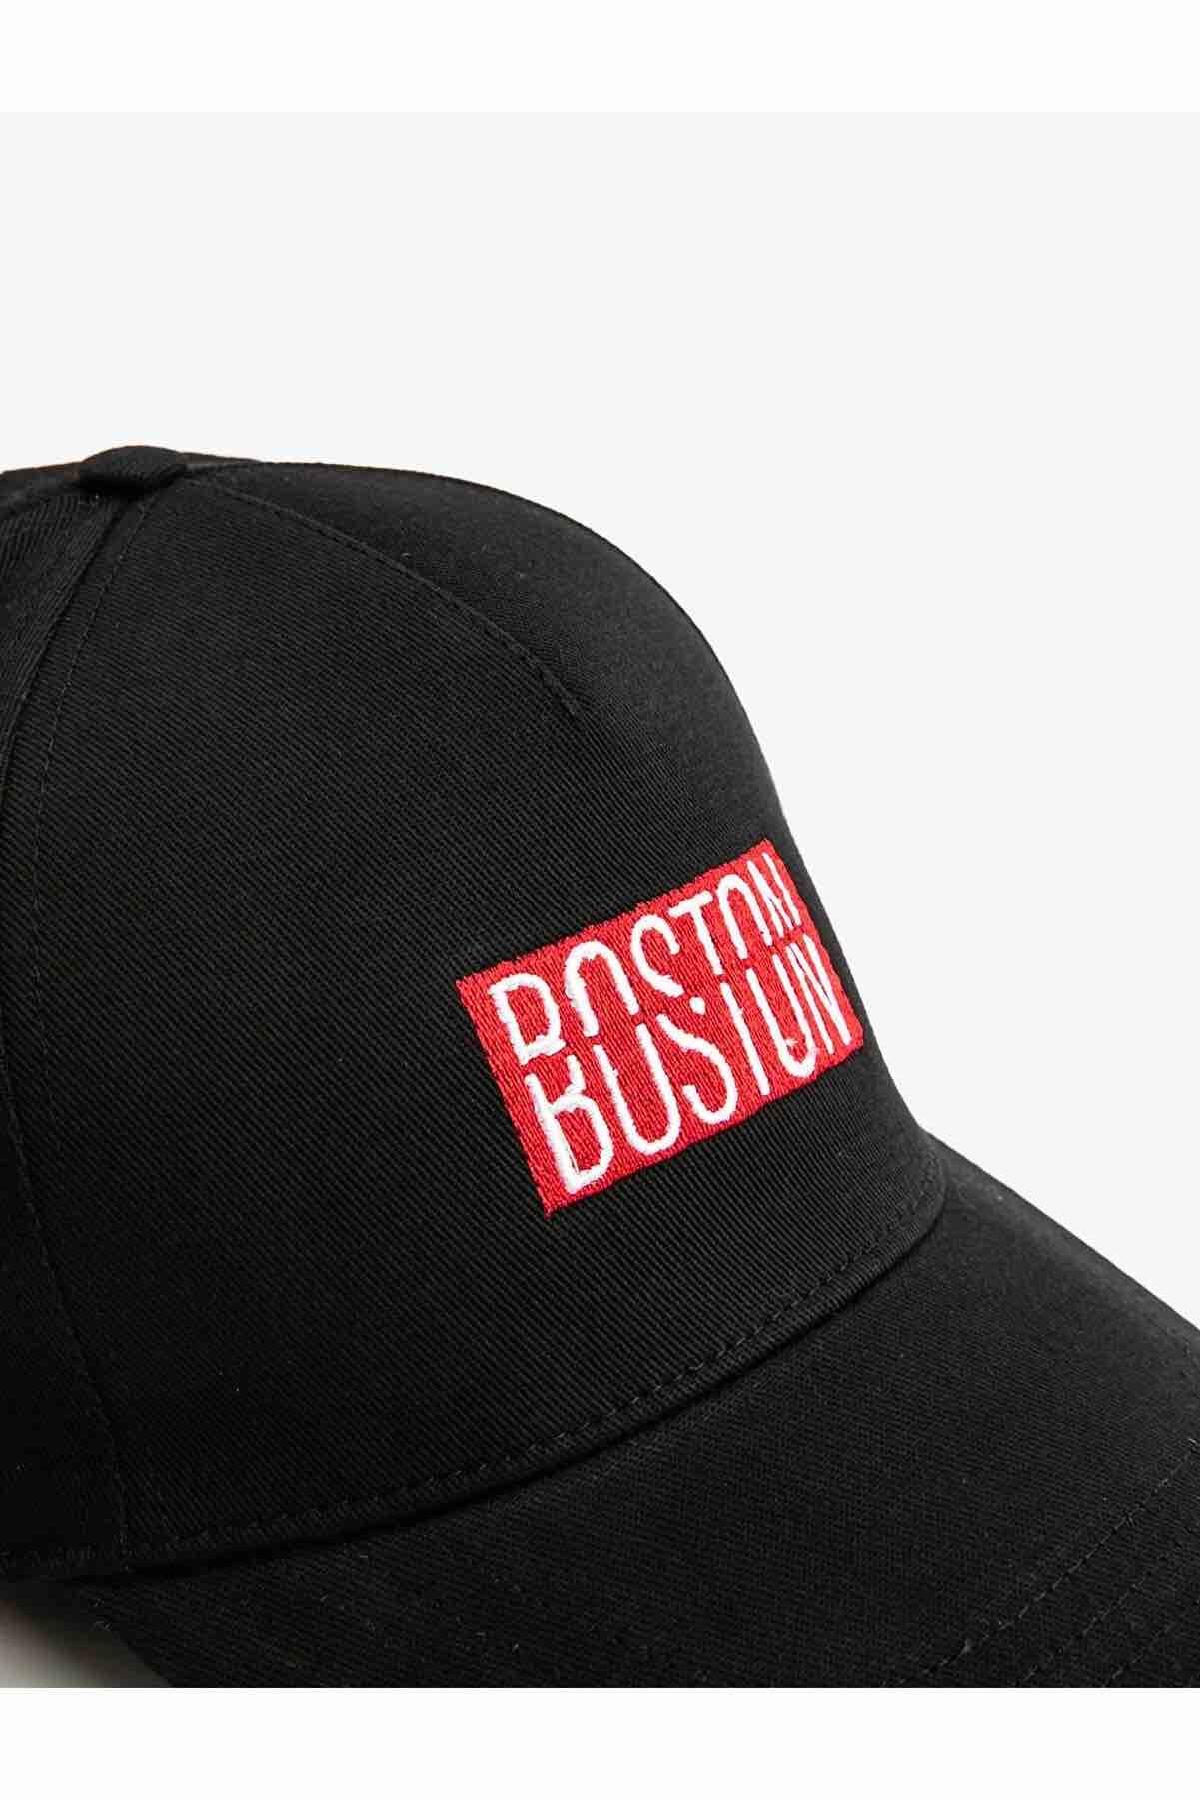 کلاه اسپرت یونیسکس کوتون طرح بوستون کد.1161